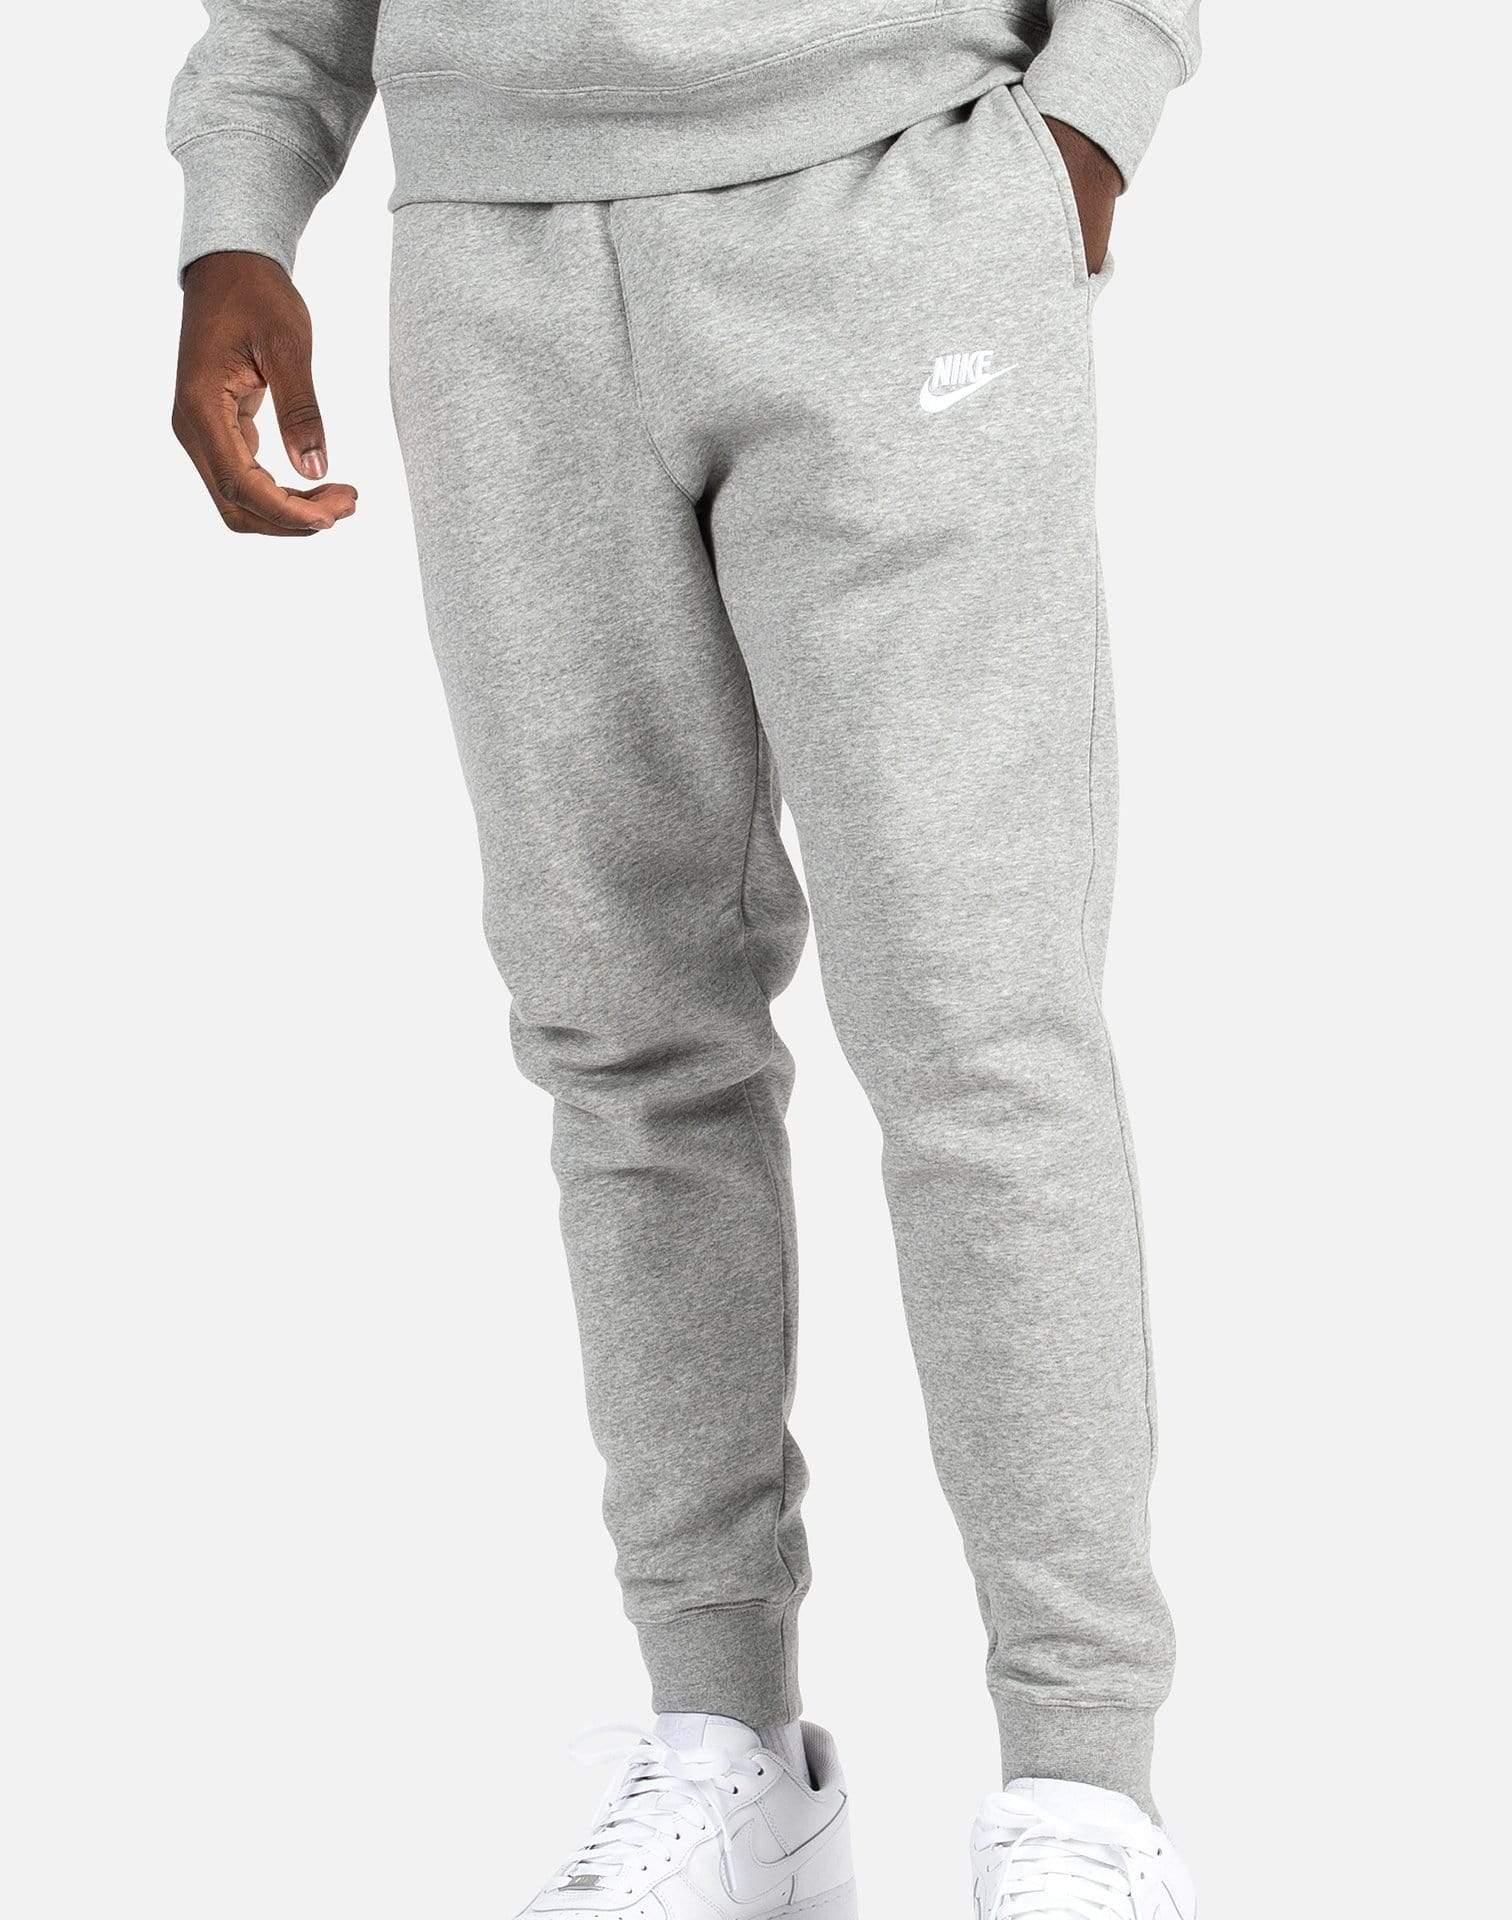 Nike Nsw Club Fleece JOGGER Pants in Gray for Men - Lyst